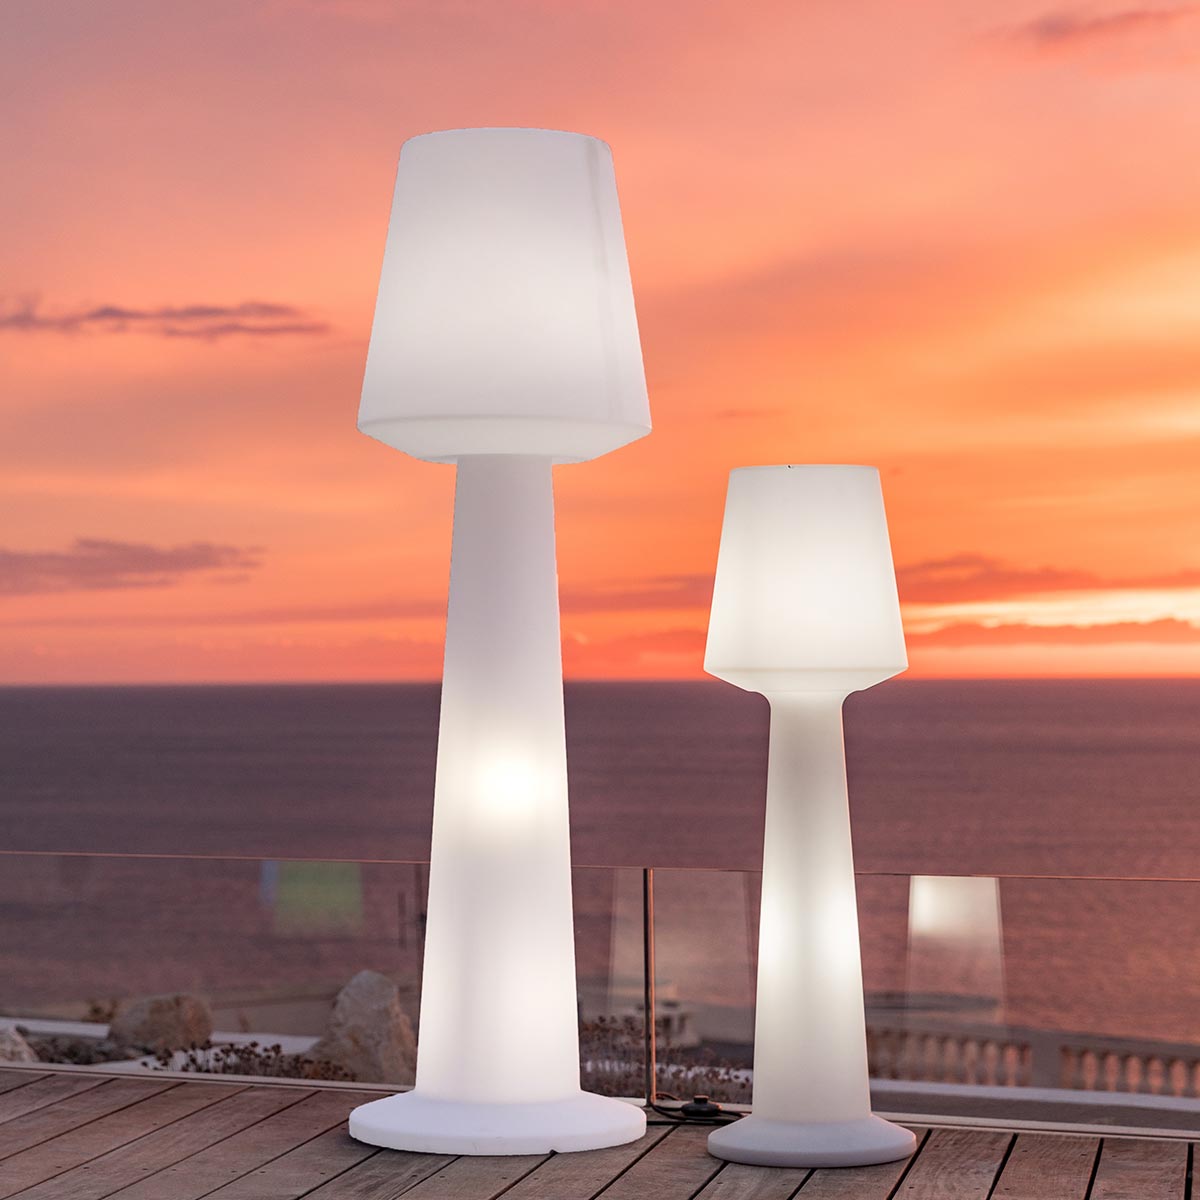 Lampadaire design lumineux filaire pour extérieur éclairage puissant LED blanc AUSTRAL H170cm culot E27 - REDDECO.com